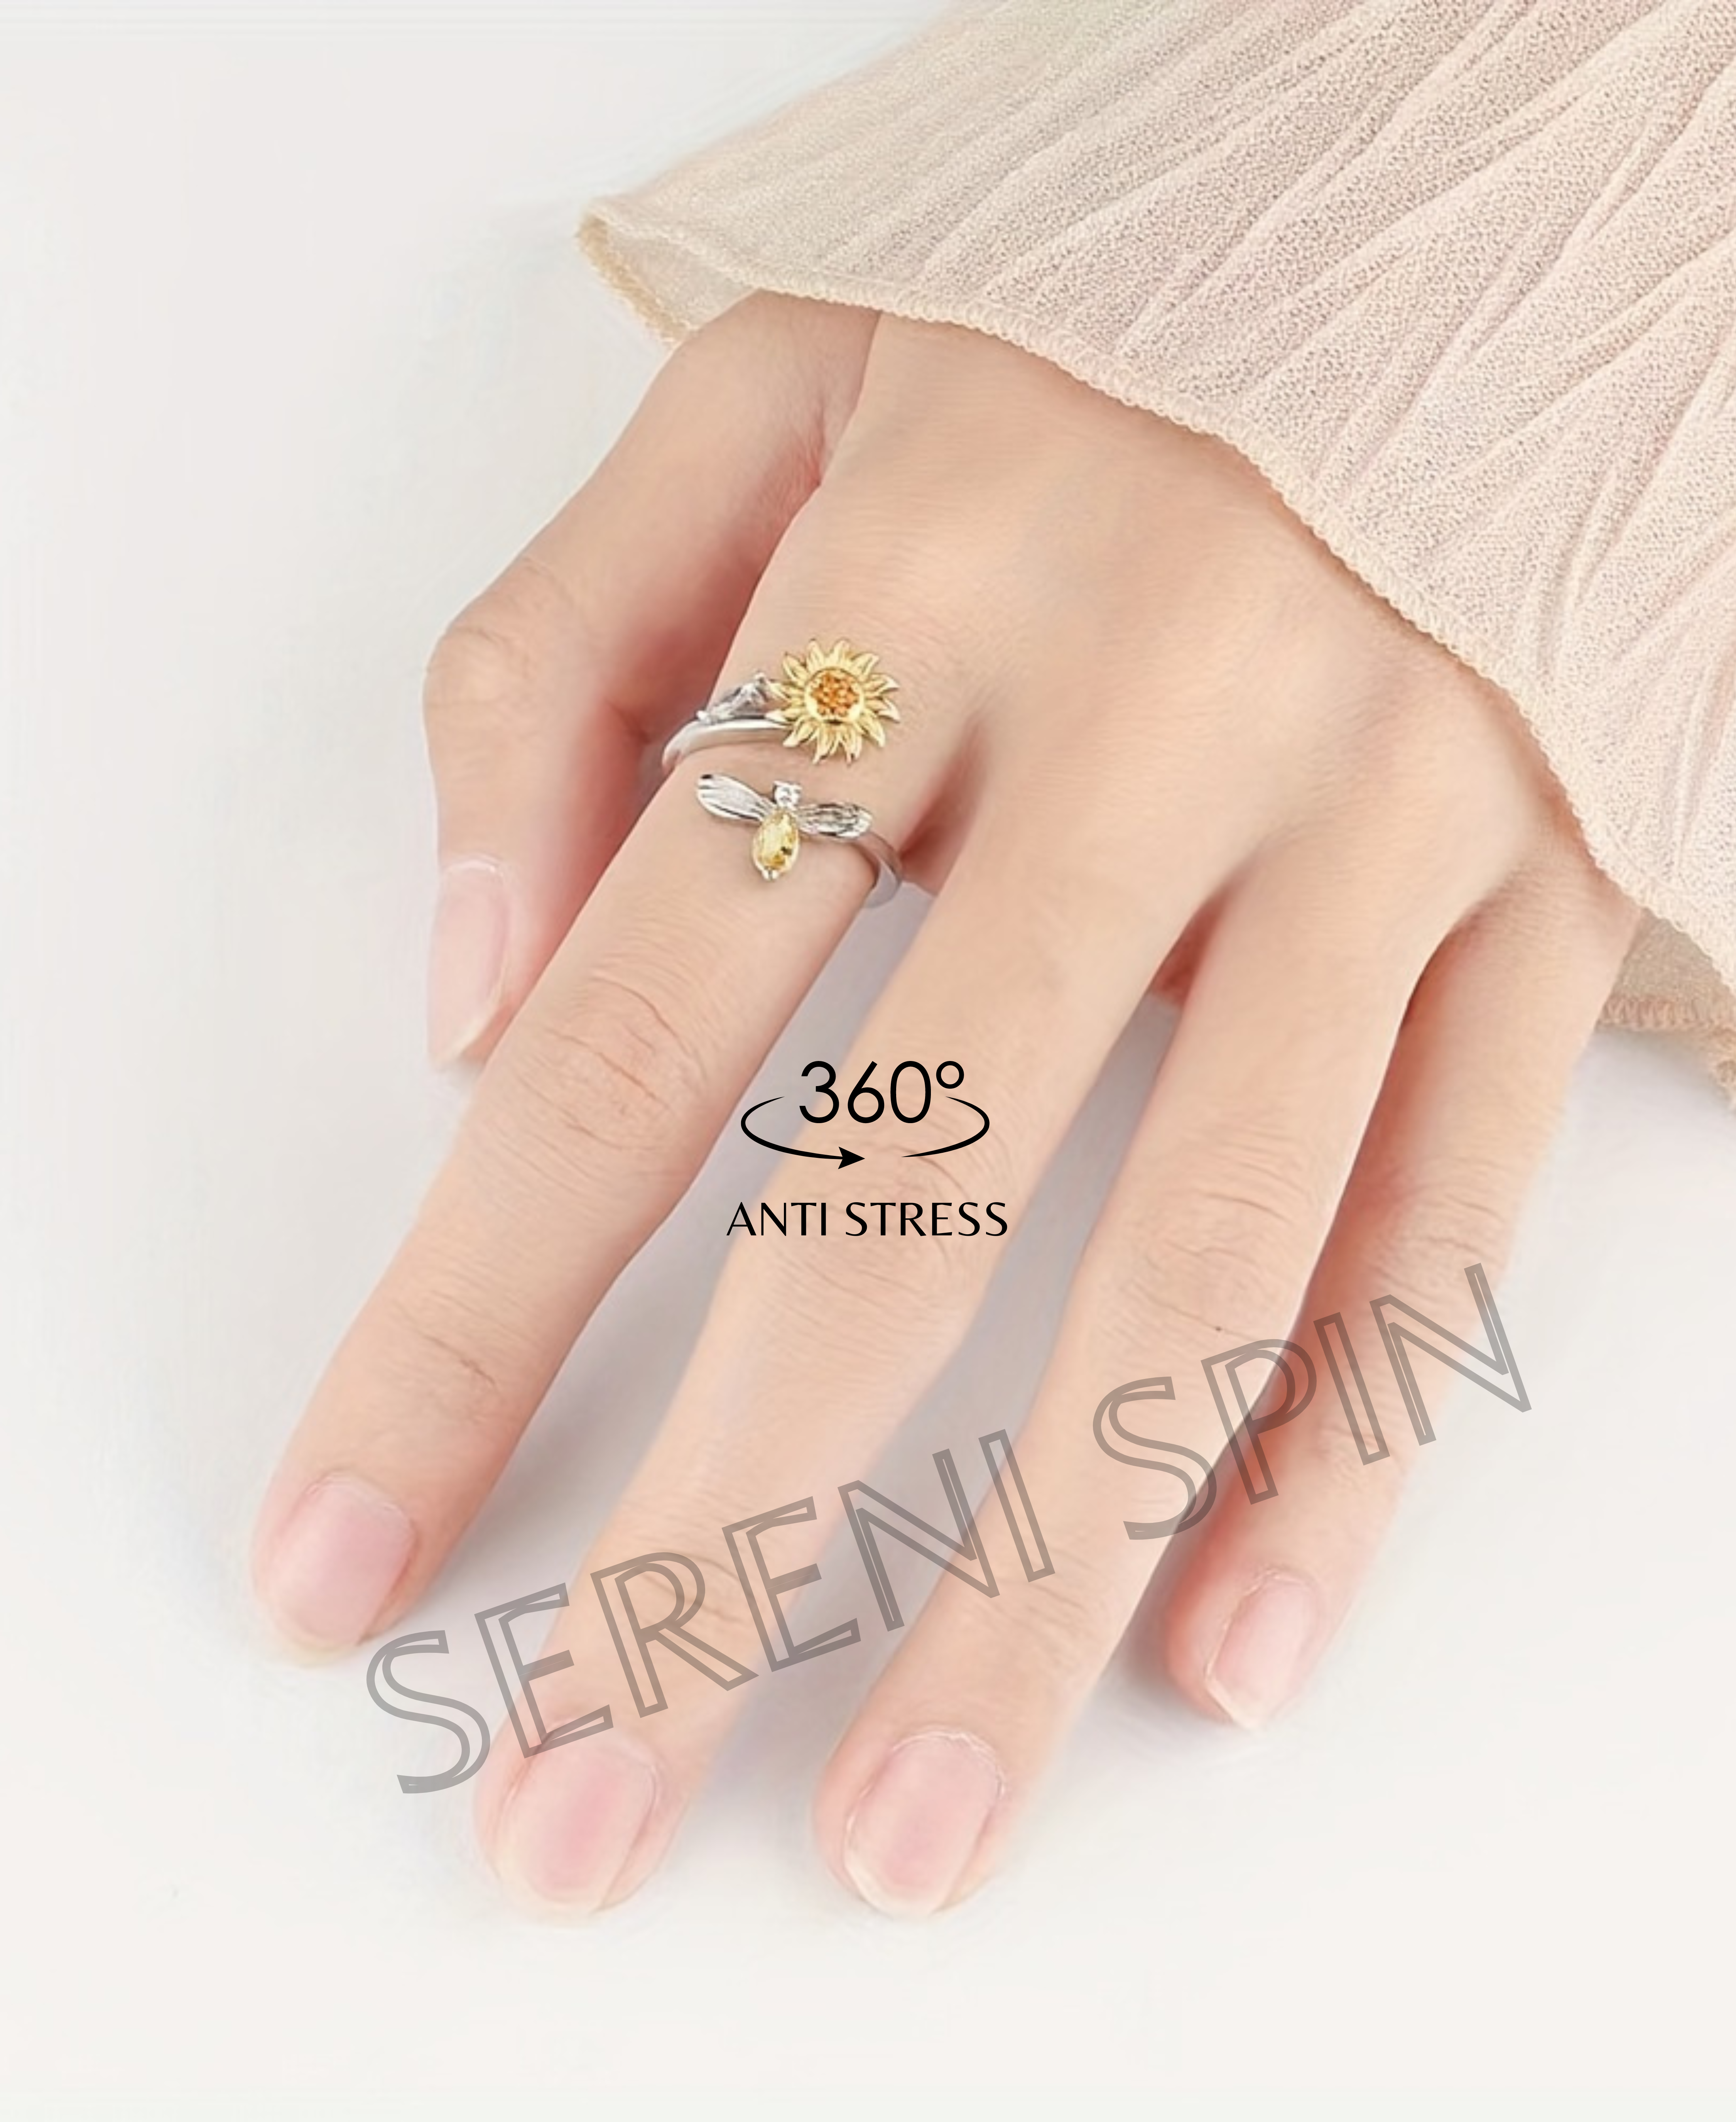 Sunbeam Splendor: The 'Sunflower' Ring 🌻